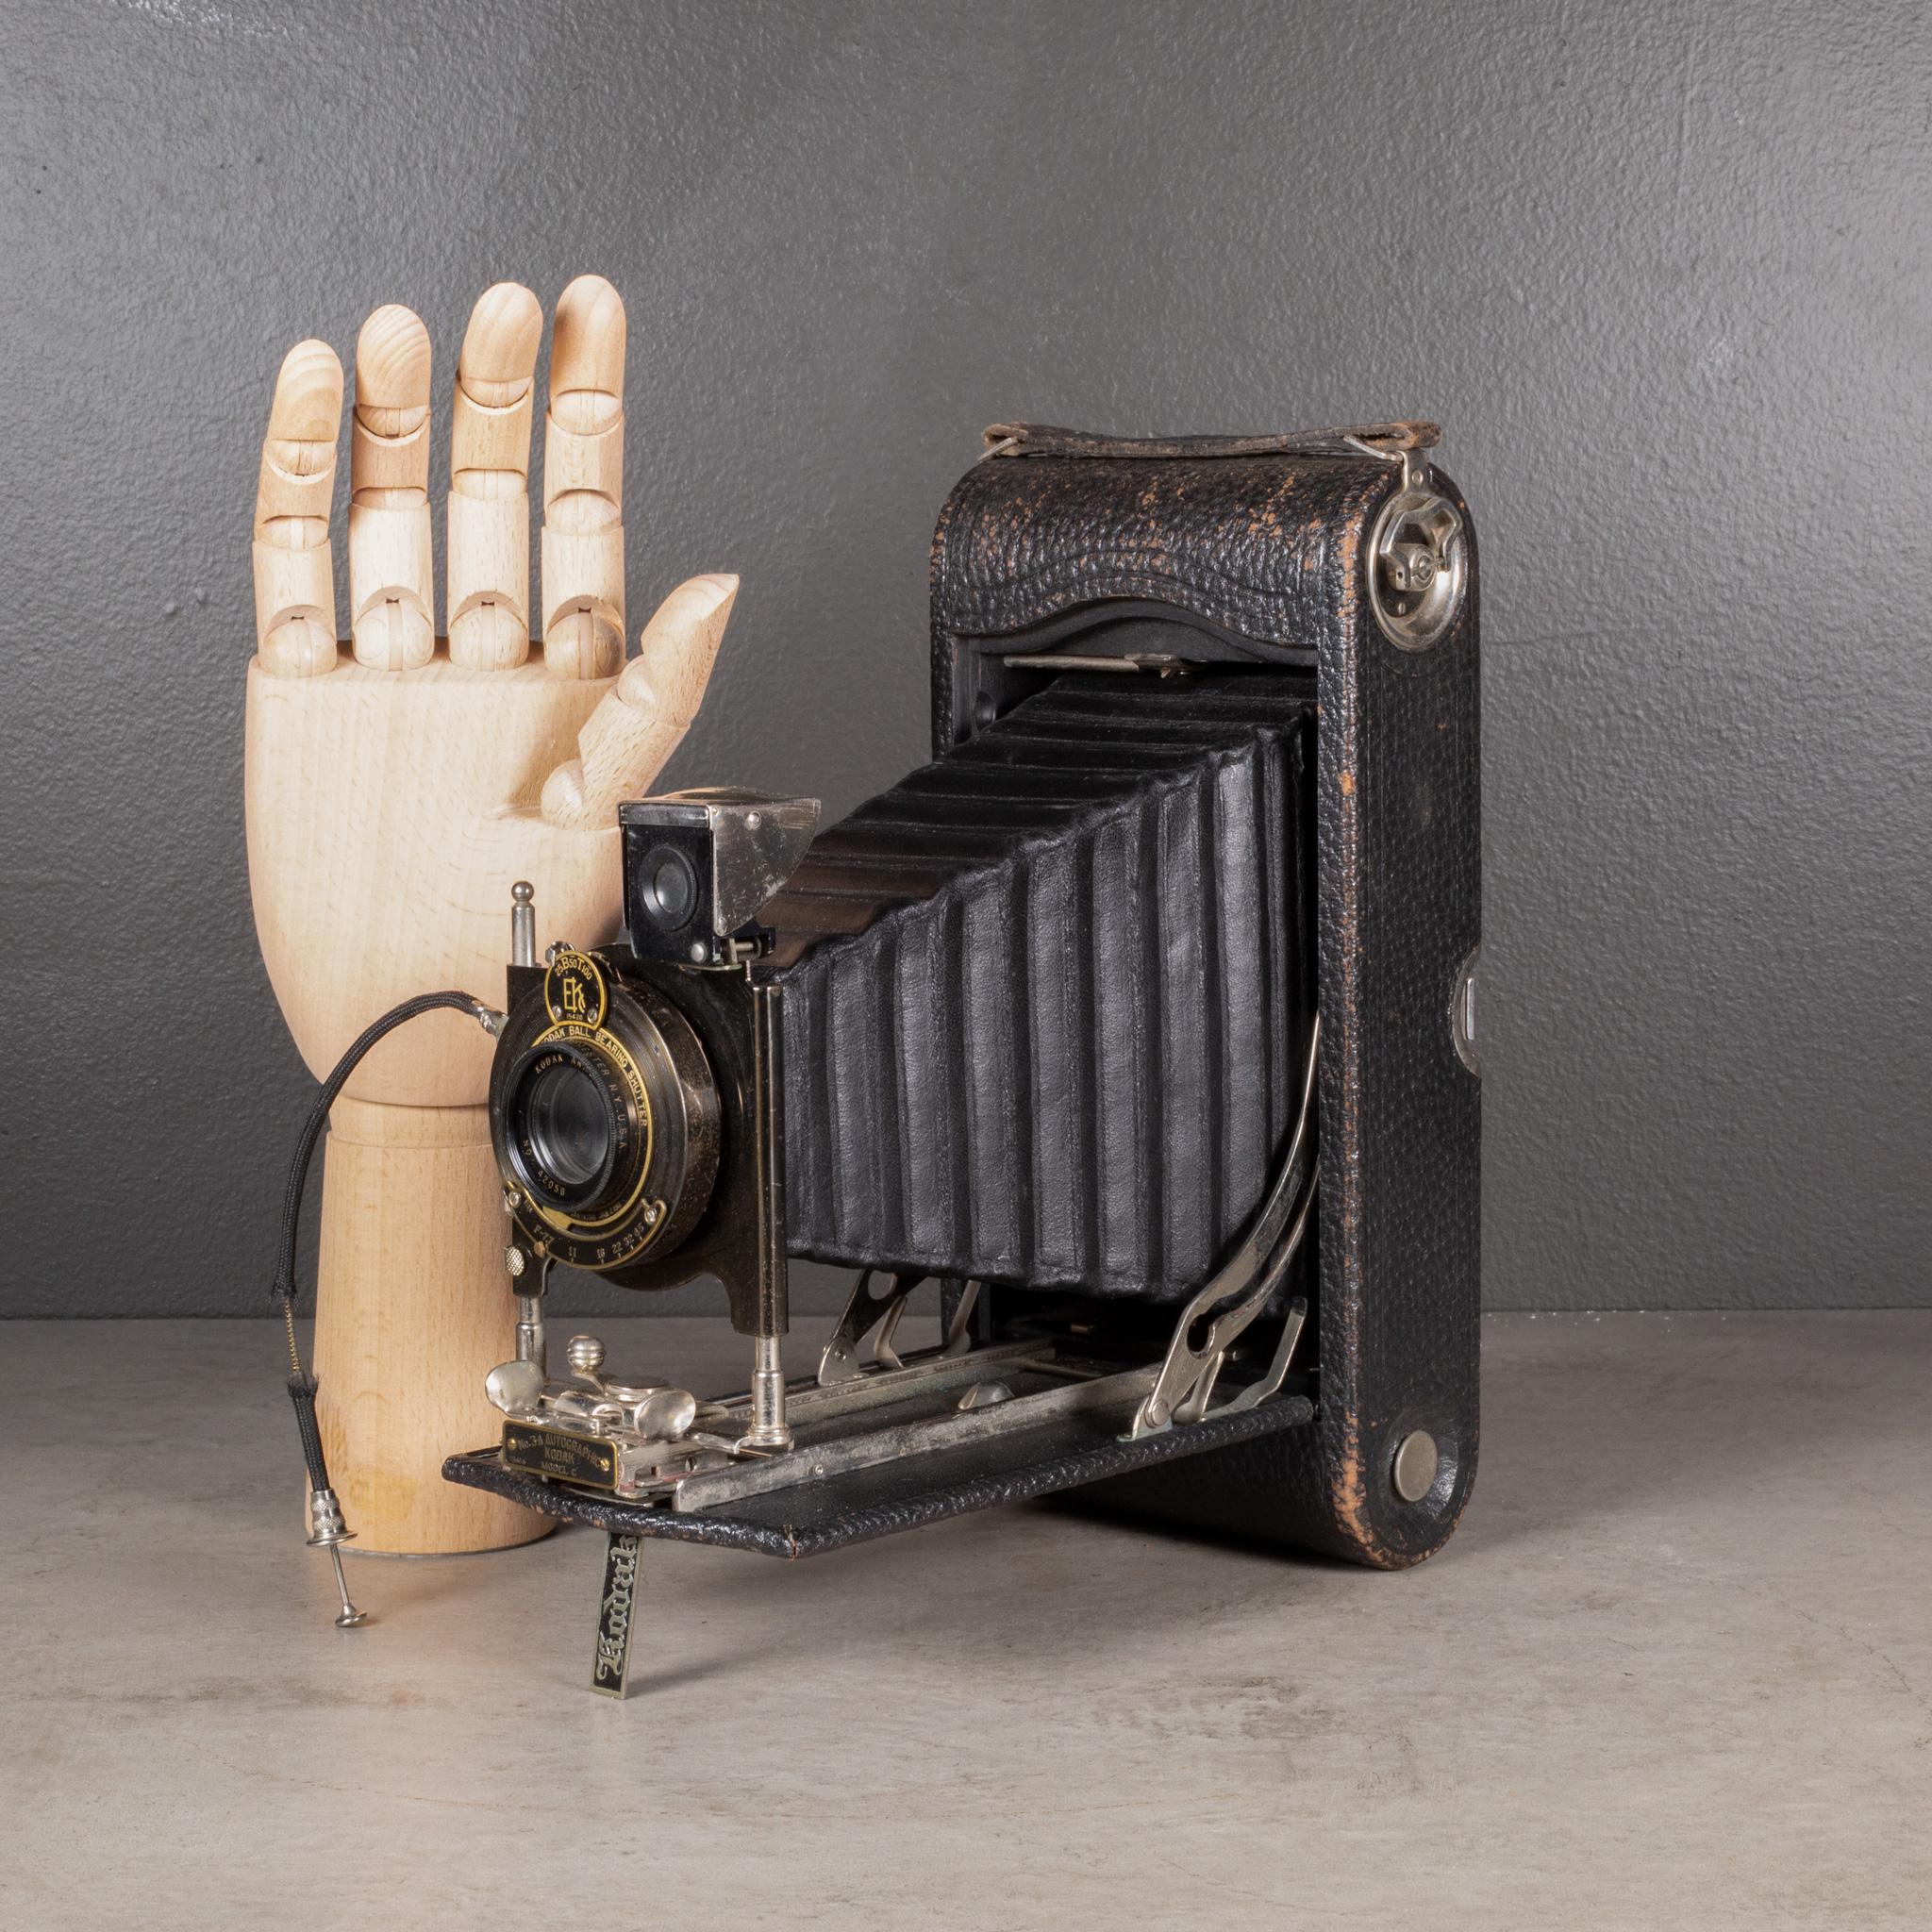 ÜBER

Eine große Eastman Kodak No. 3A Faltkamera. Das Gehäuse ist mit Leder ummantelt und hat schwarze Metall-, Chrom- und Messingakzente auf dem Objektiv. Die Kamera ist mit einem Handauslöser ausgestattet und lässt sich auf 2 Zoll falten.